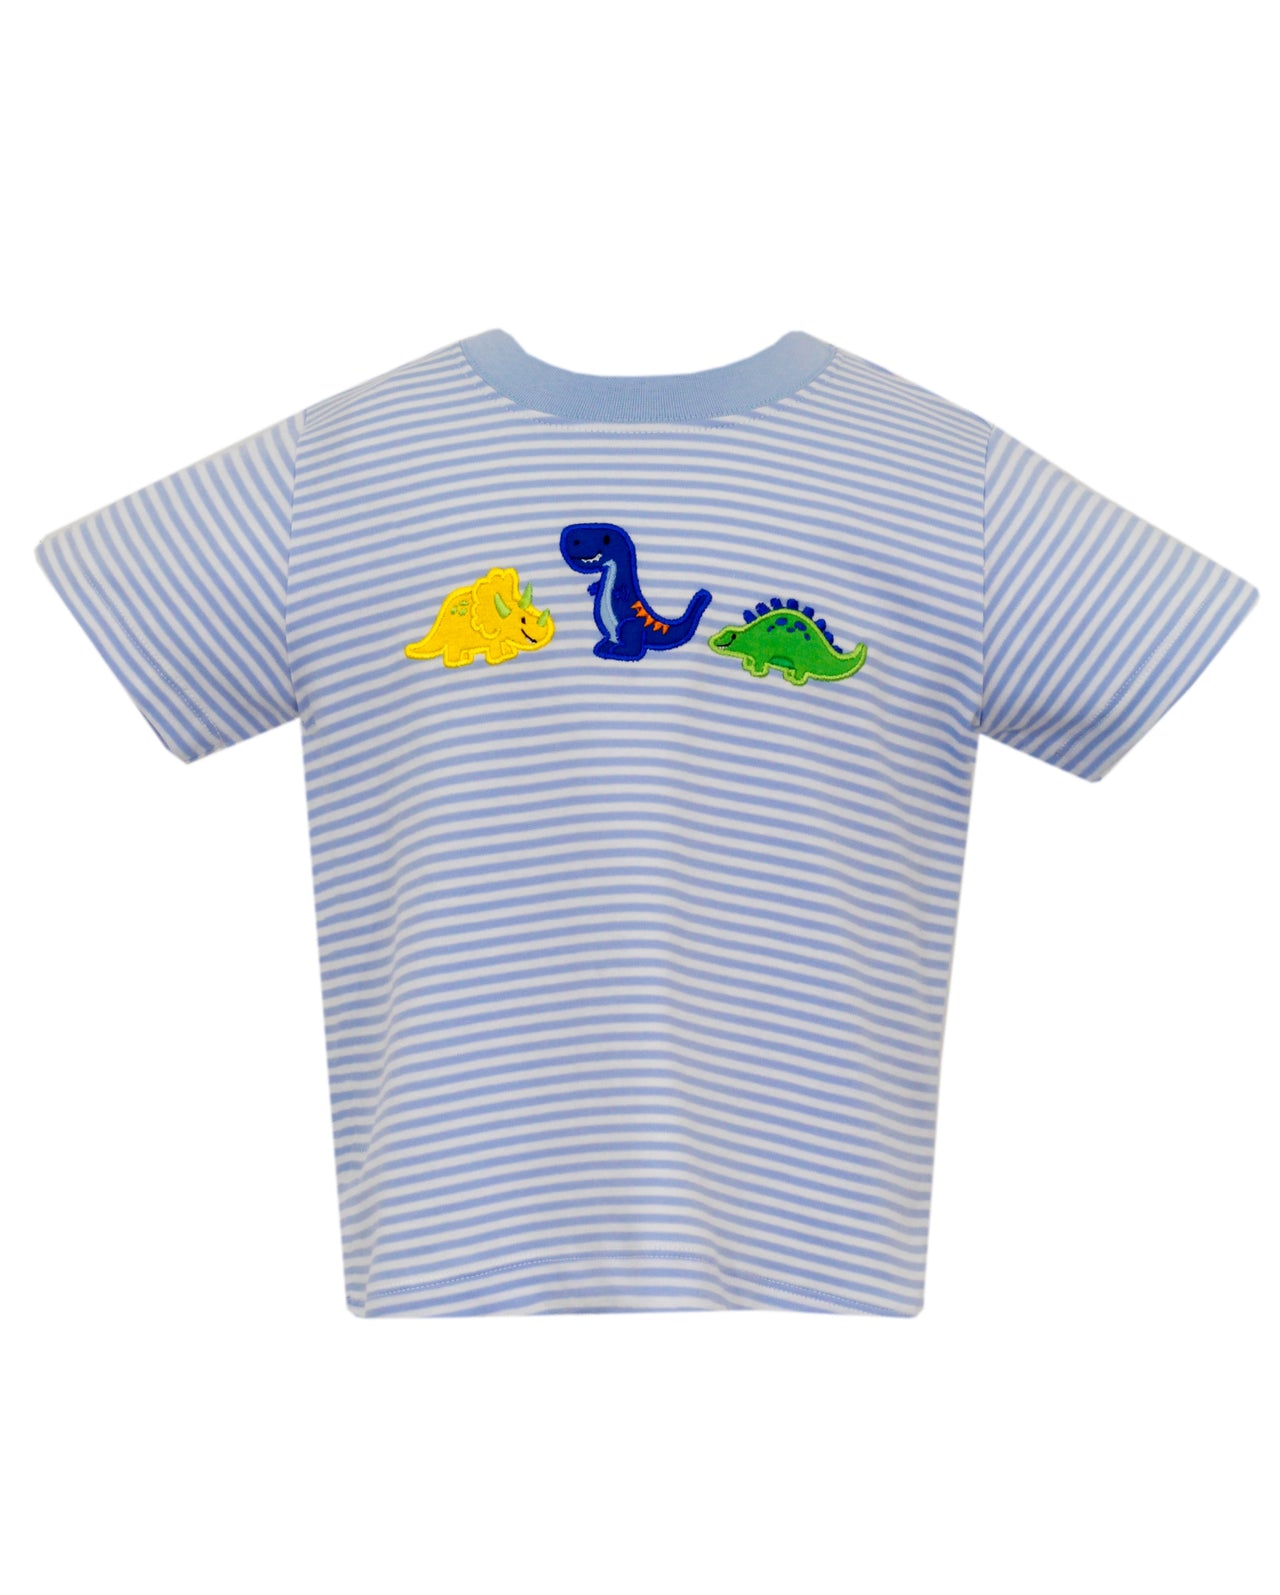 Claire & Charlie Dinosaurs Lt Blue Knit Stripe Boys T-Shirt 5050P-CS24 5101